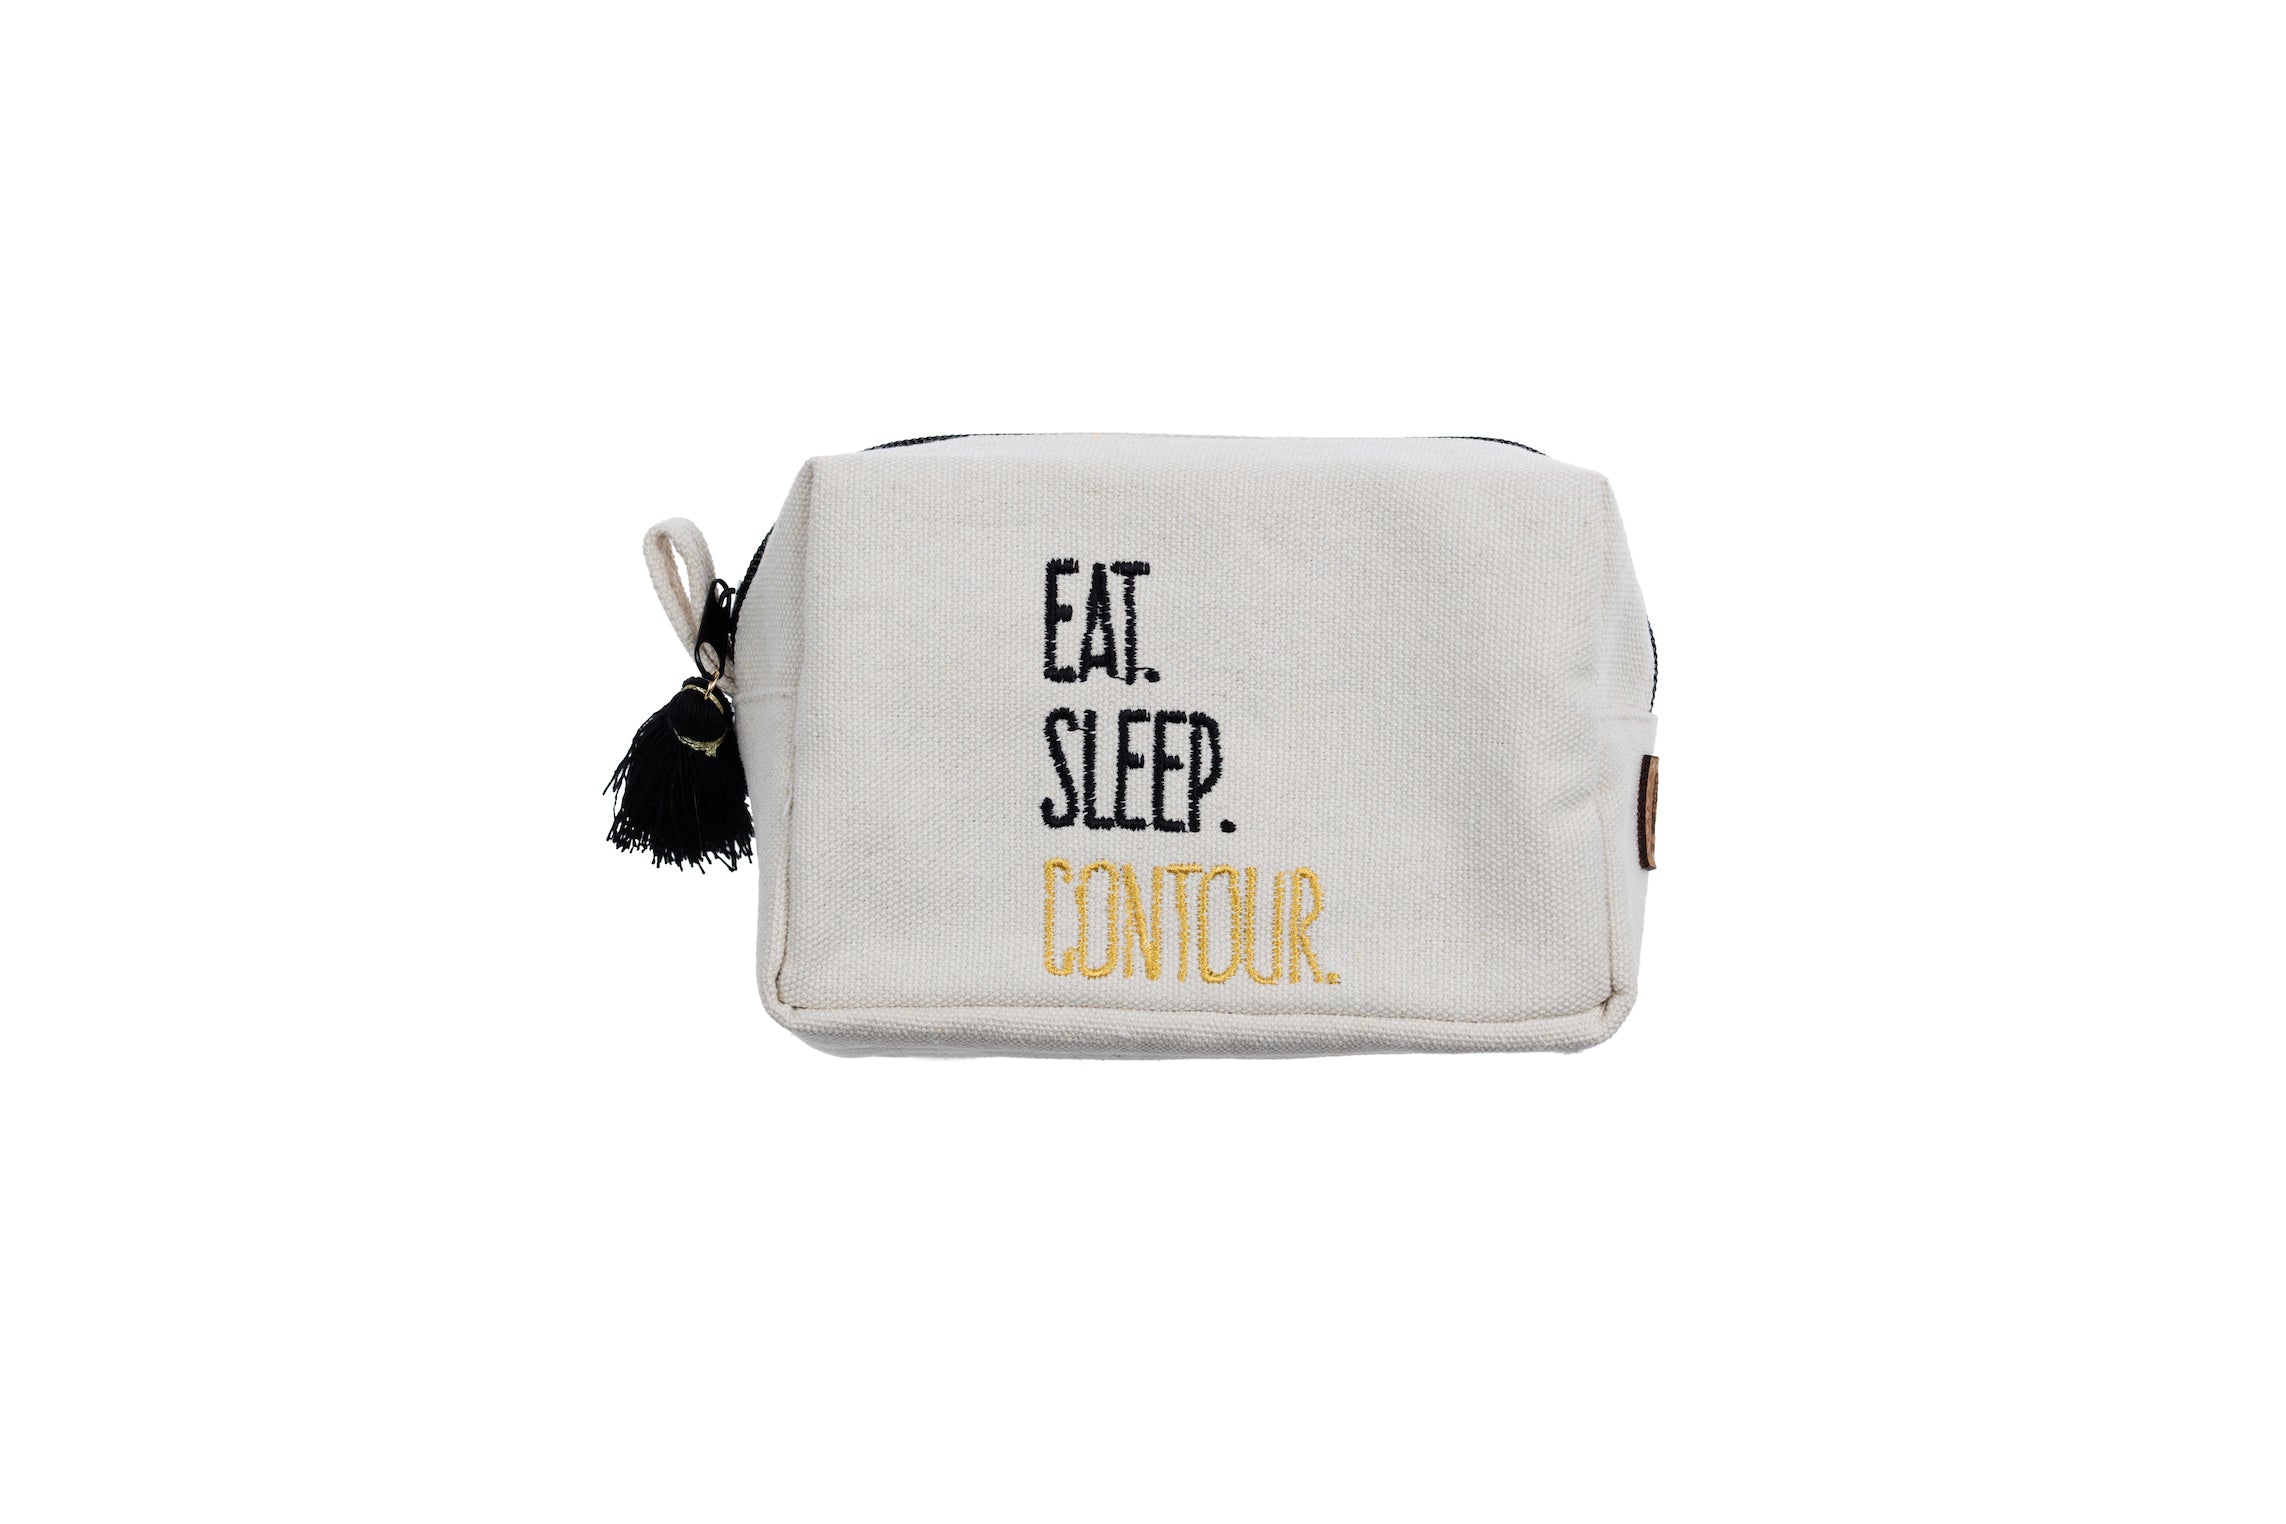 "Eat. Sleep. Contour." Tasseled Zipper Pouch